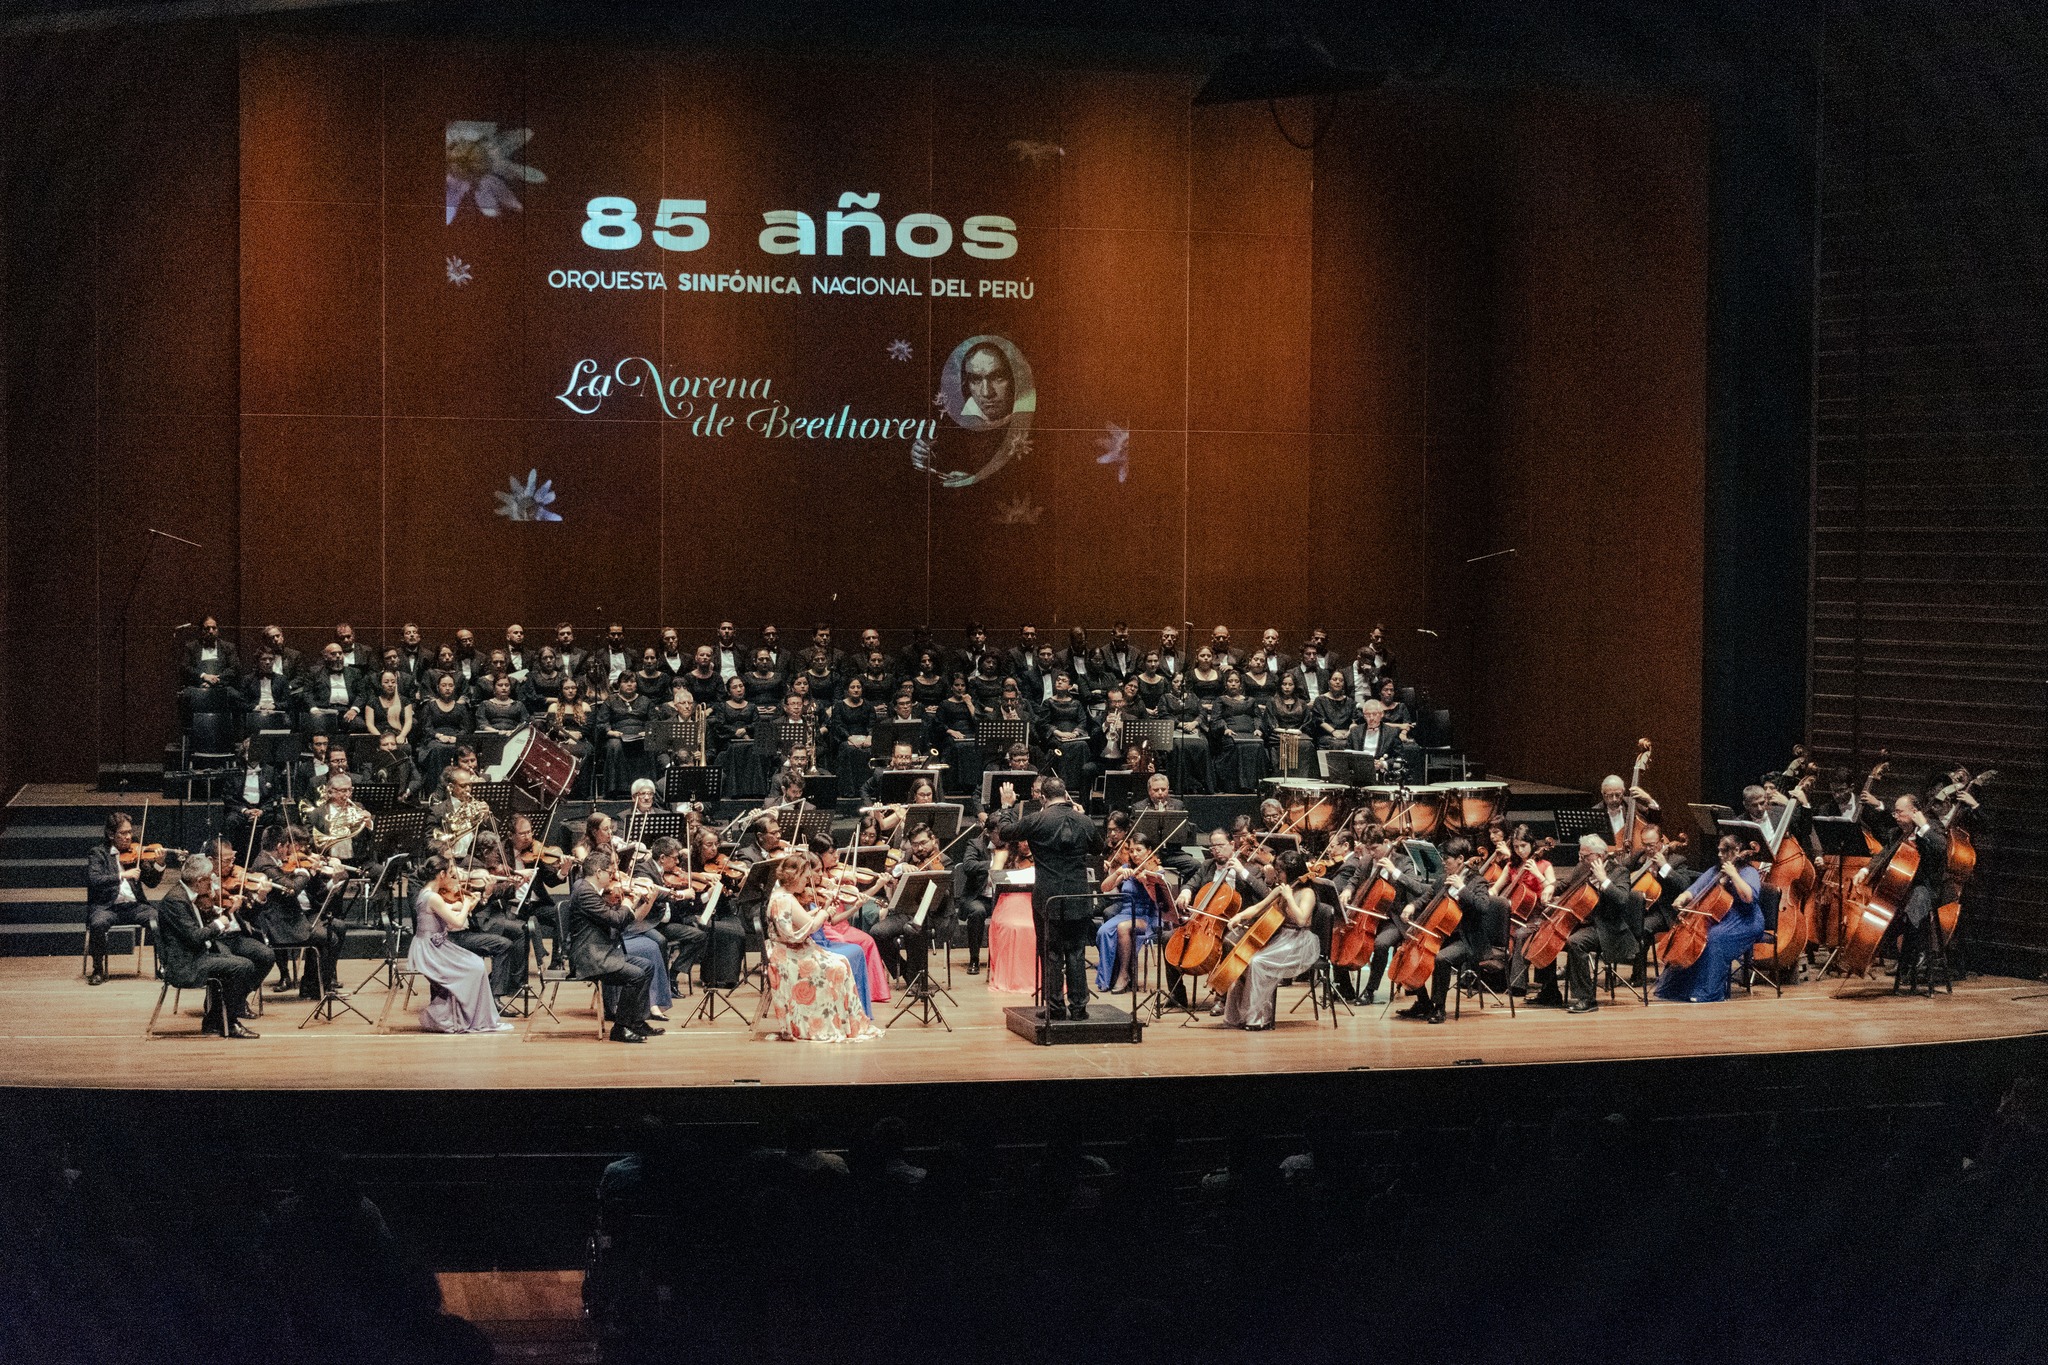 Orquesta Sinfónica Nacional del Perú celebró su 85° aniversario junto al Coro Nacional del Perú en su concierto “La Novena de Beethoven” 